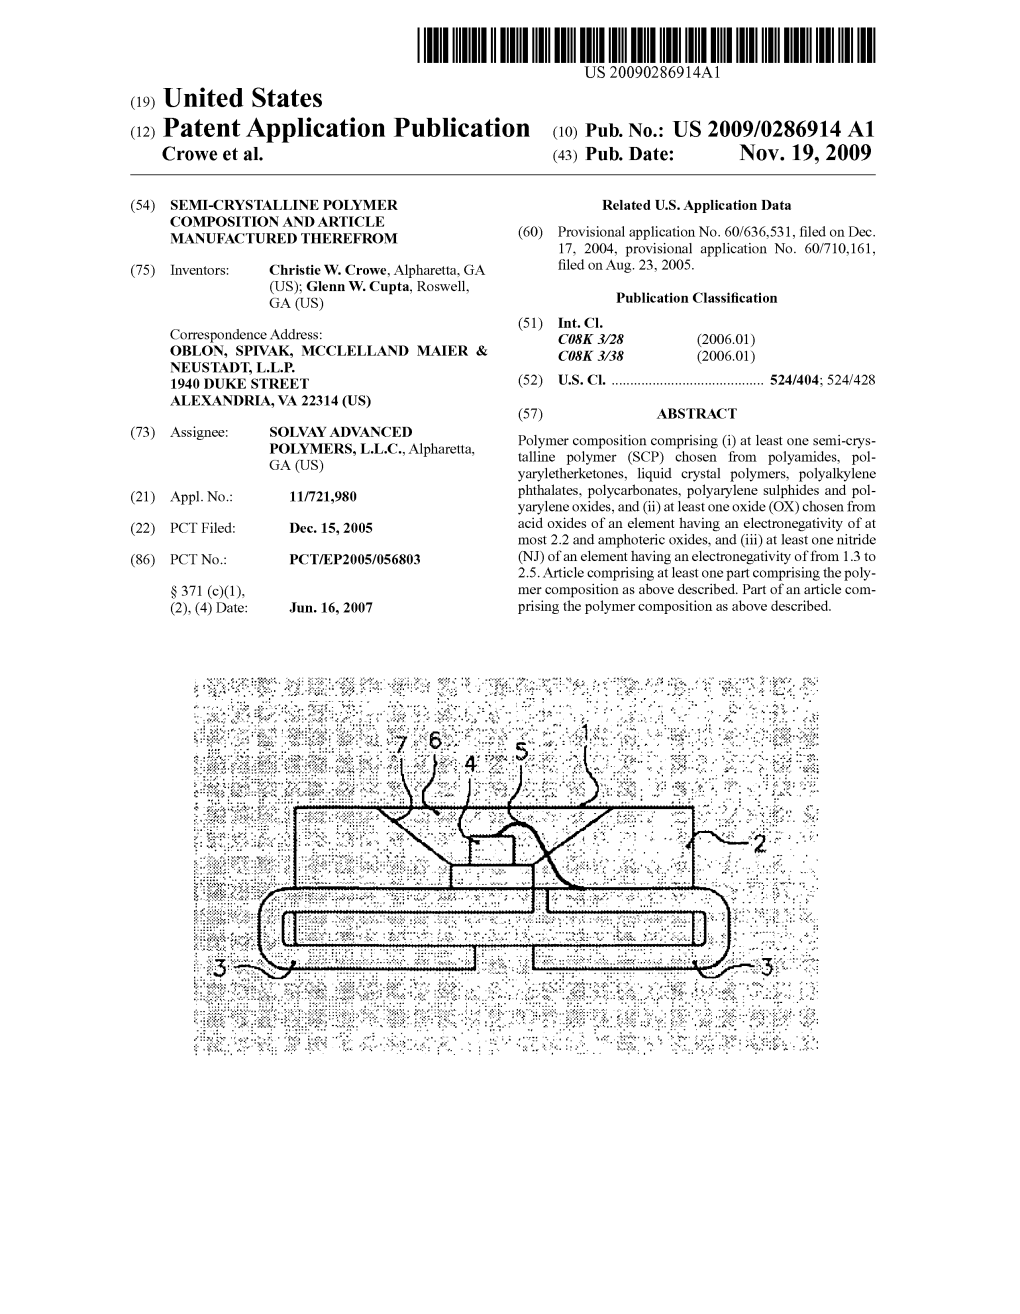 (12) Patent Application Publication (10) Pub. No.: US 2009/0286914 A1 Crowe Et Al